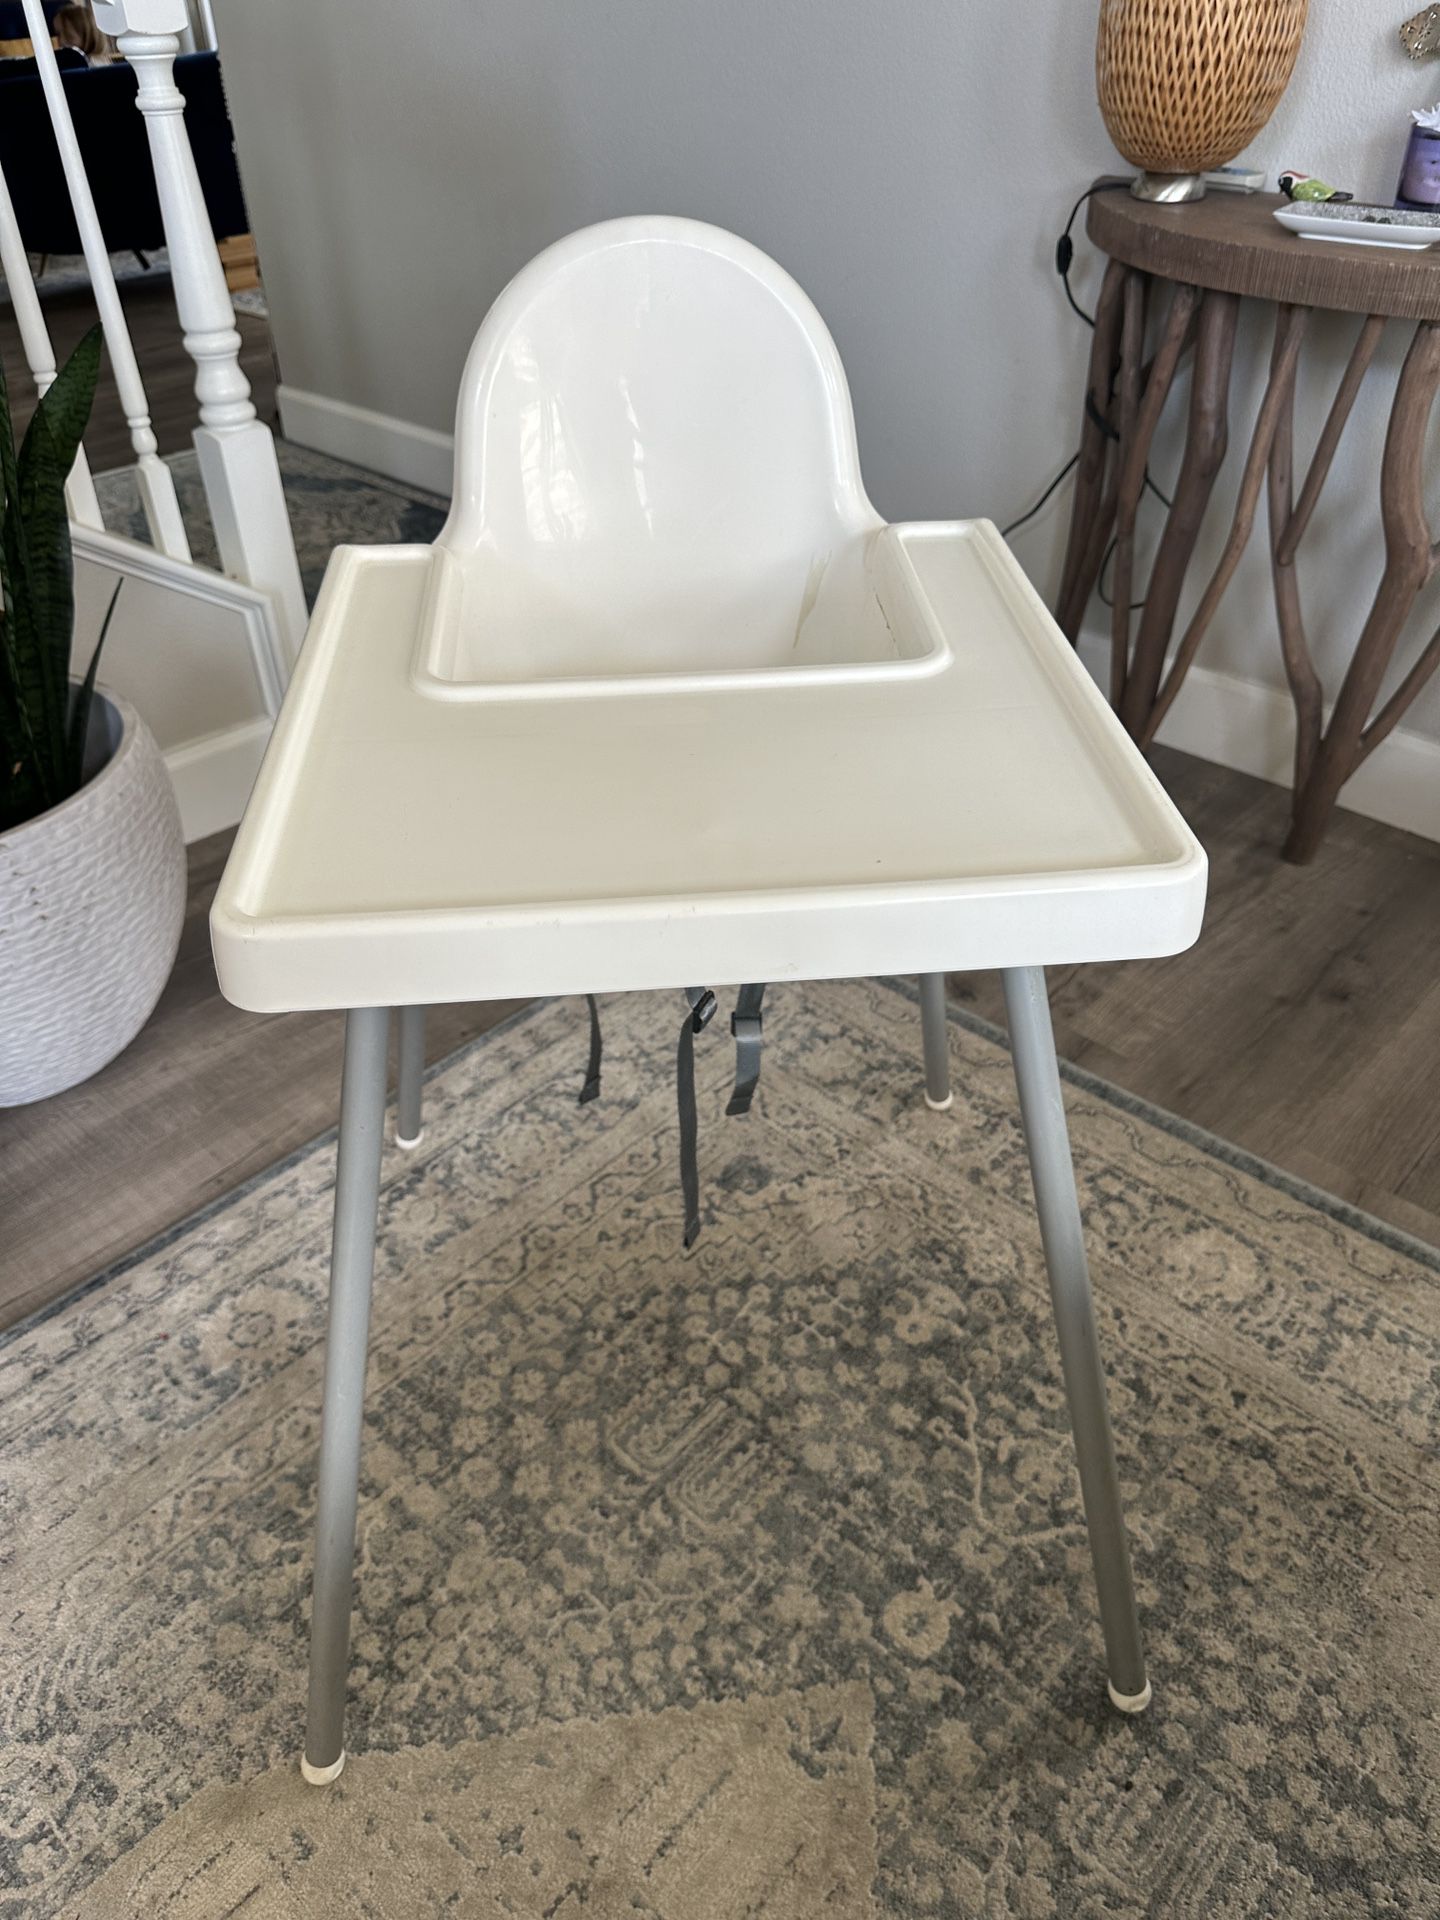 IKEA Antilop High Chair